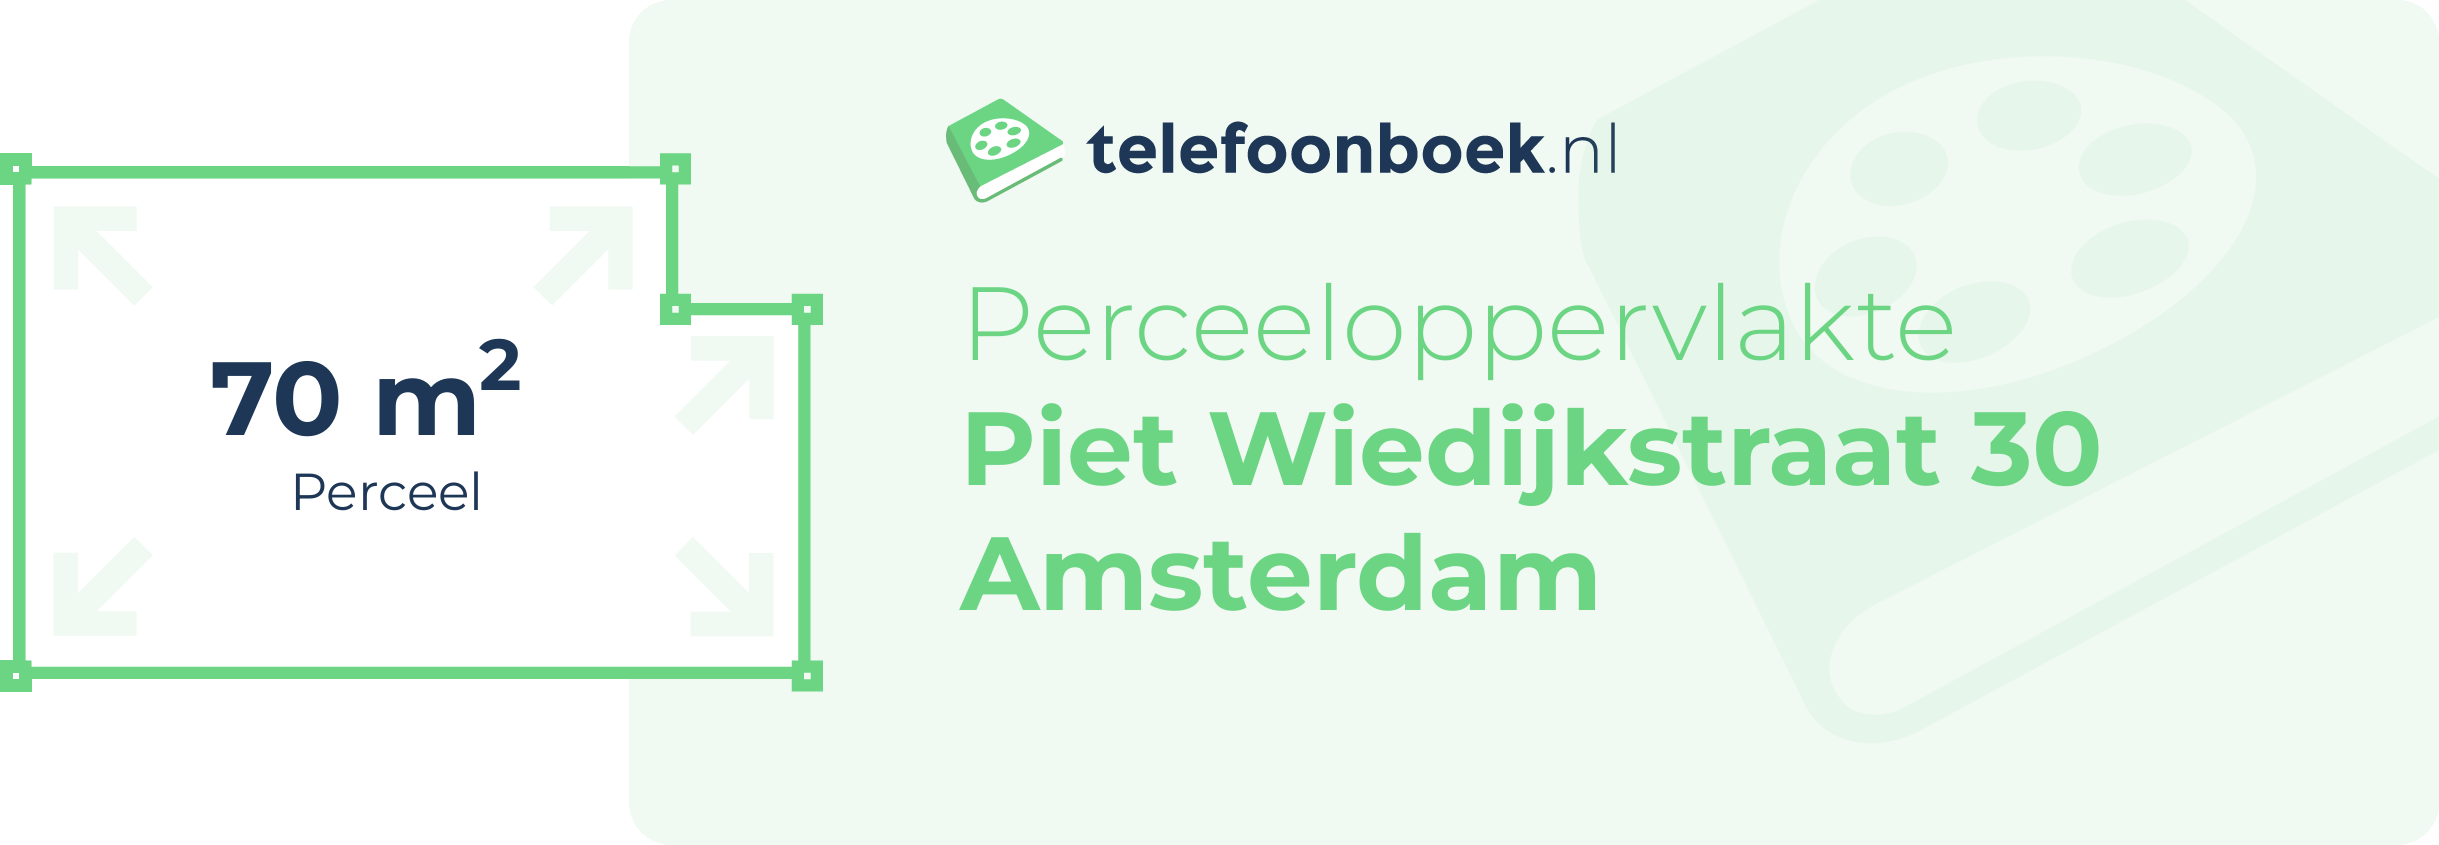 Perceeloppervlakte Piet Wiedijkstraat 30 Amsterdam